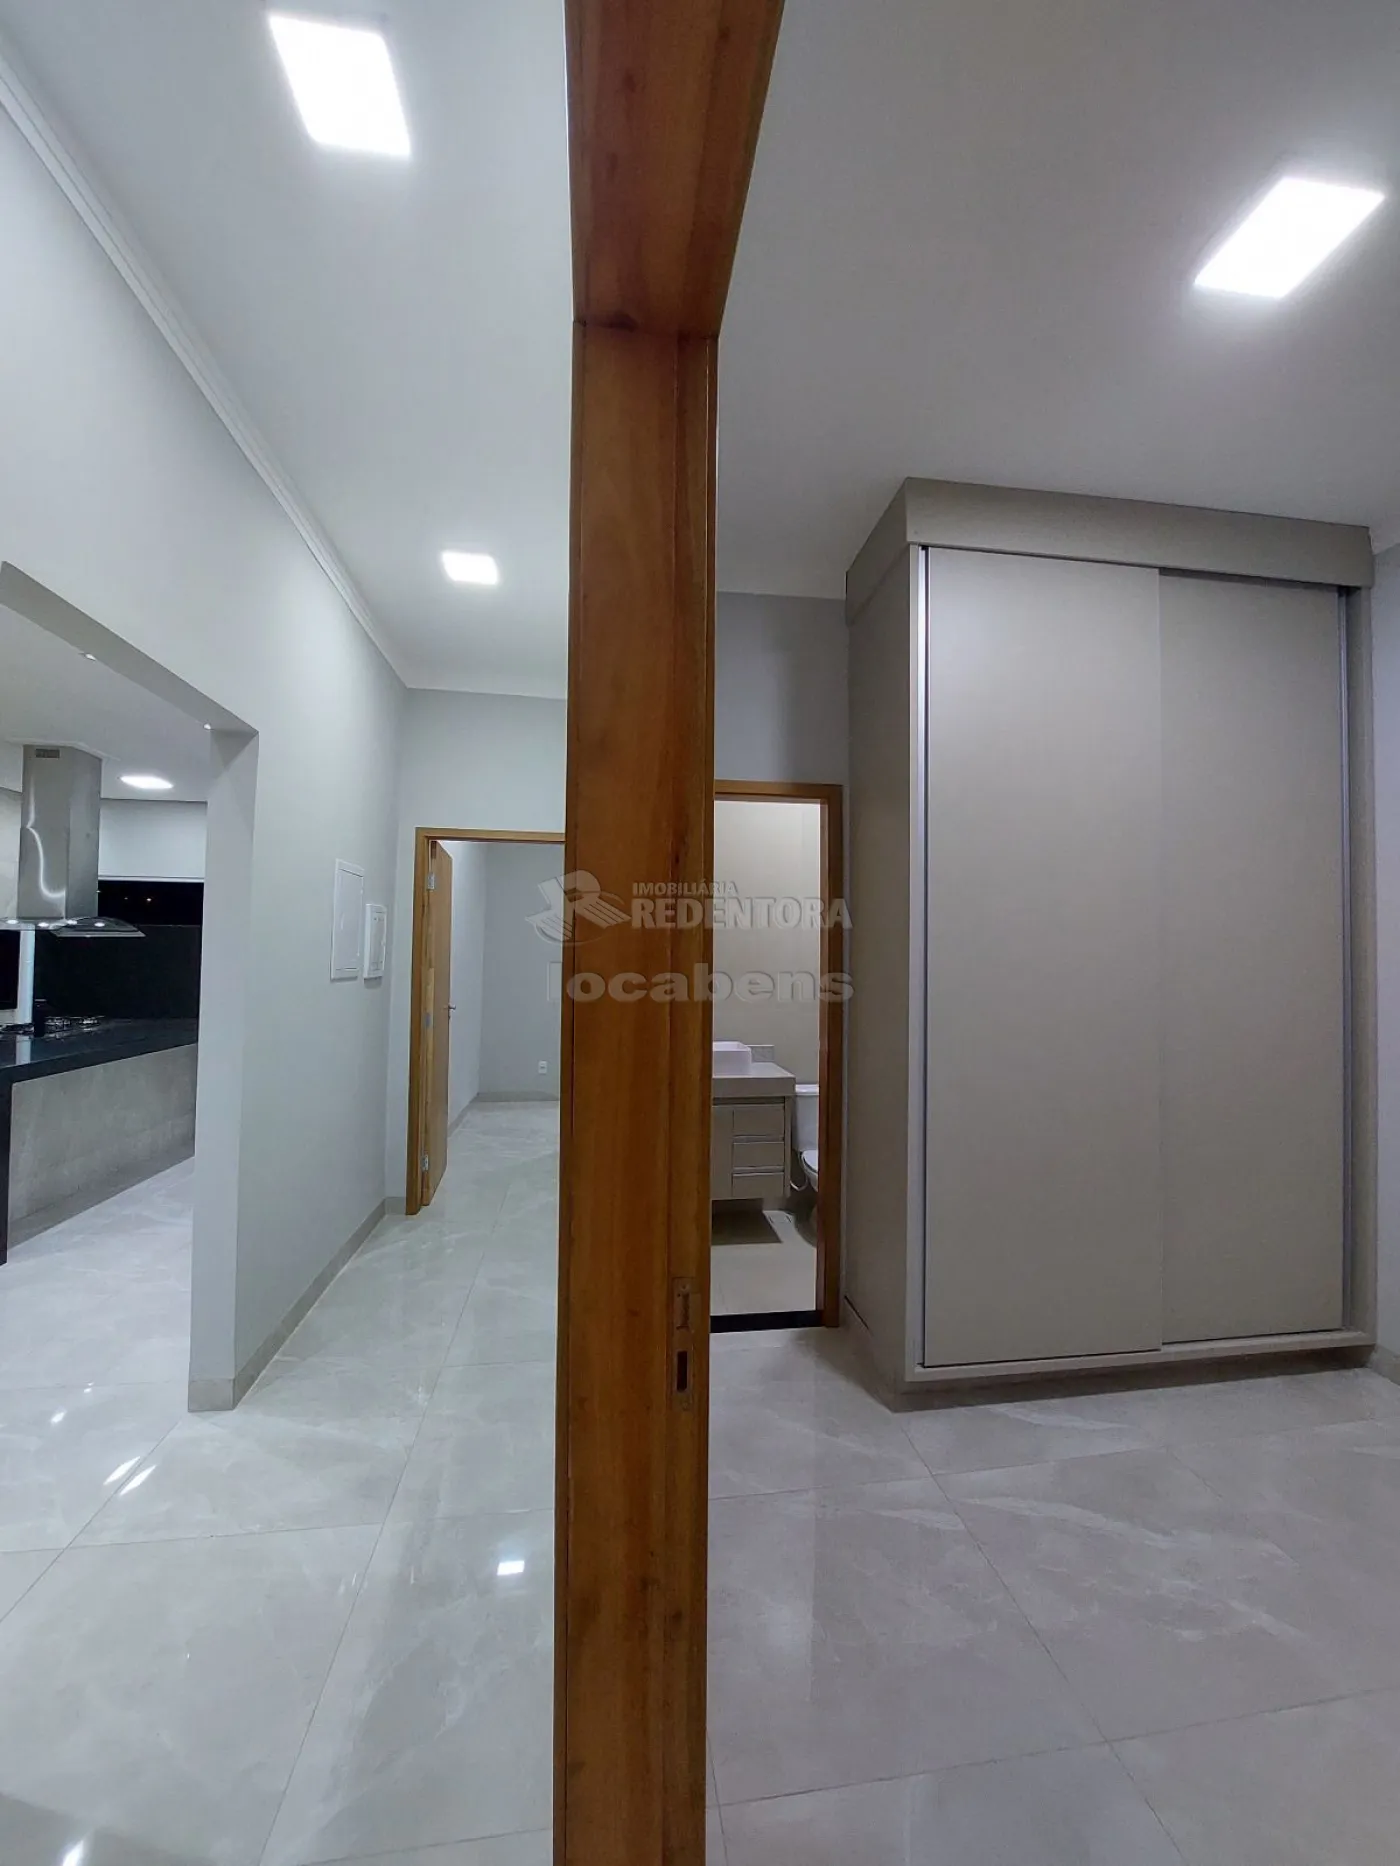 Comprar Casa / Condomínio em Mirassol apenas R$ 980.000,00 - Foto 10